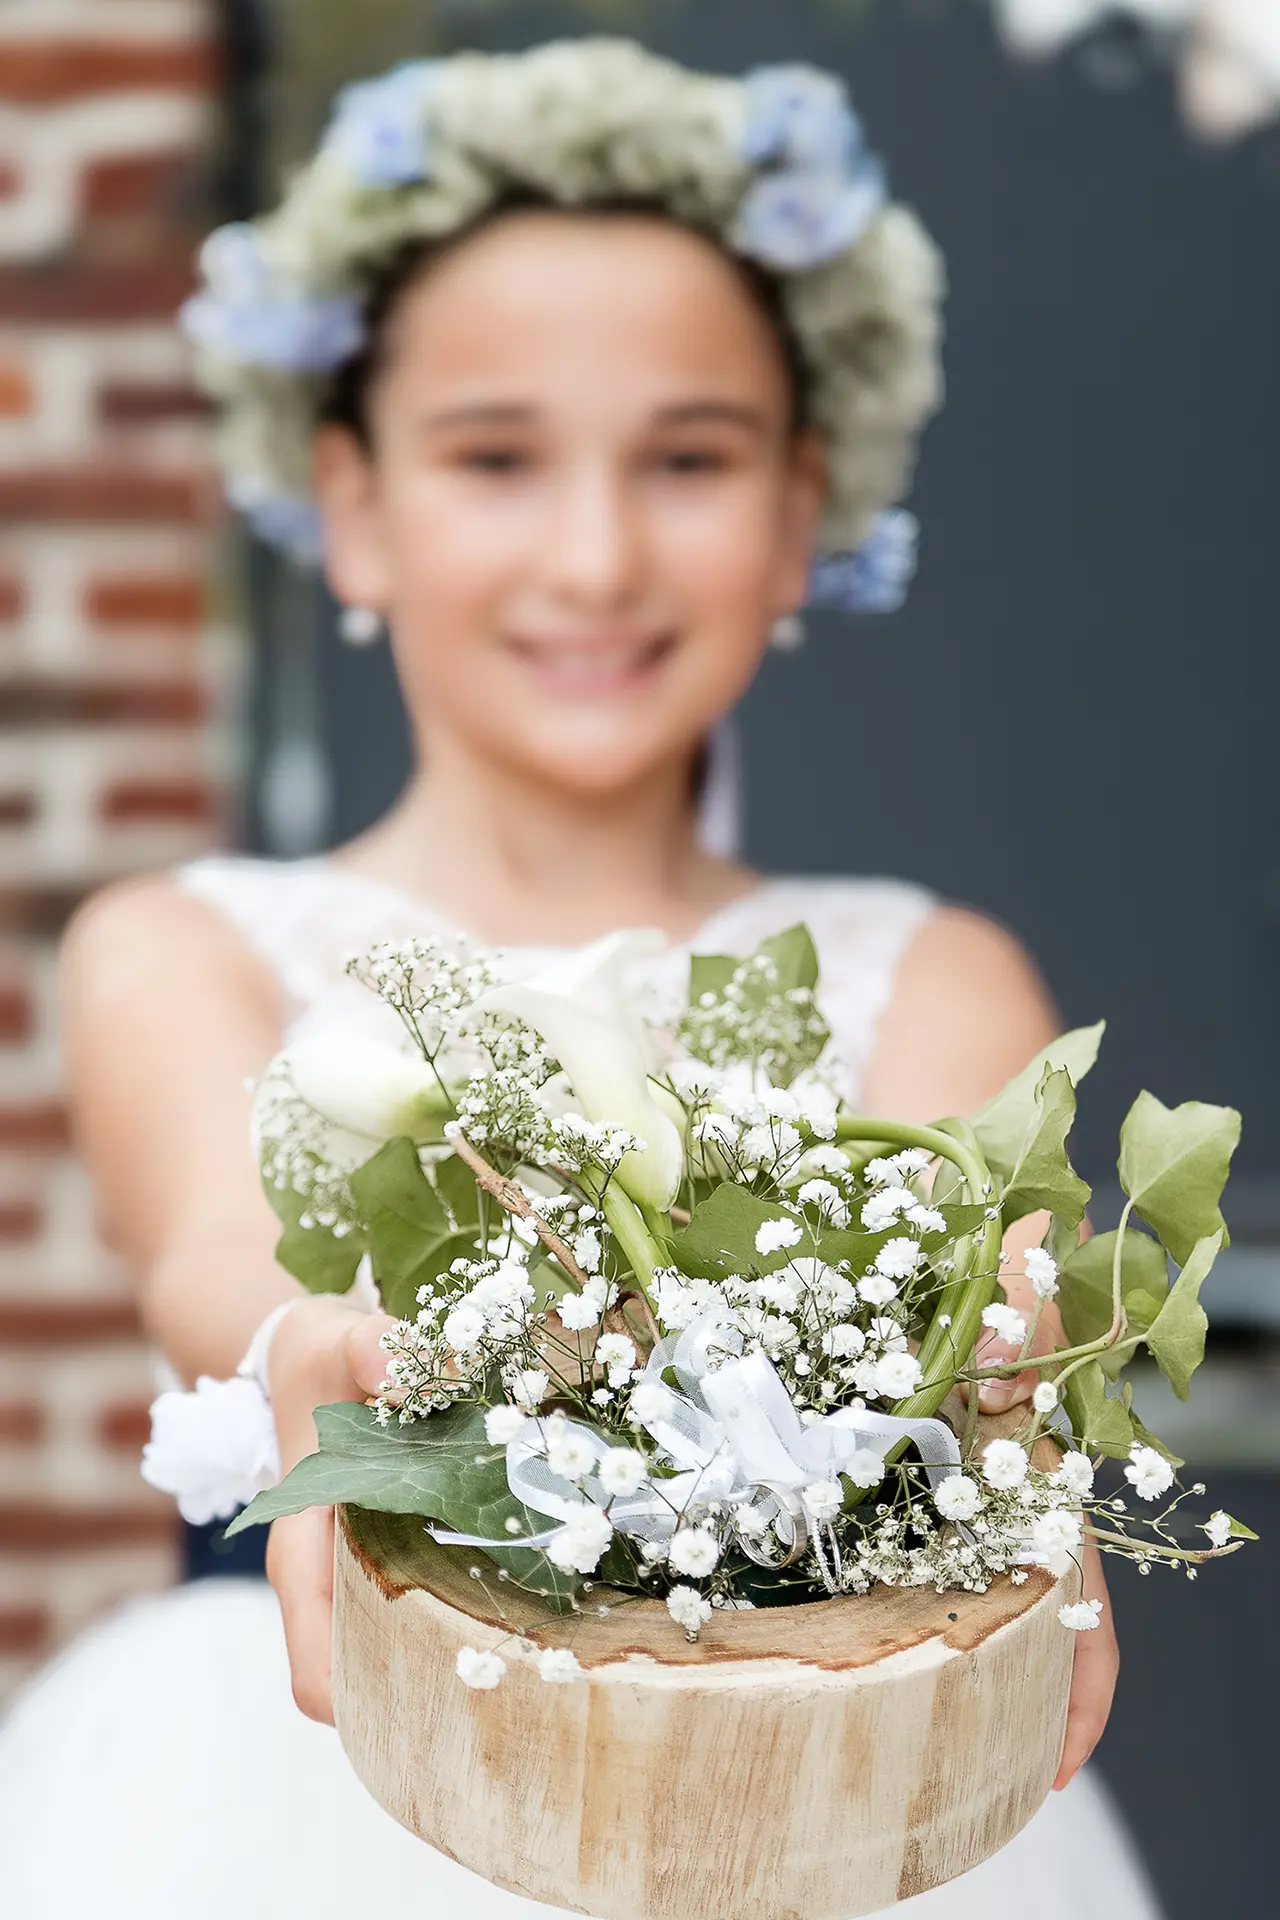 Enfant tendant un bouquet de mariÃ©e devant elle